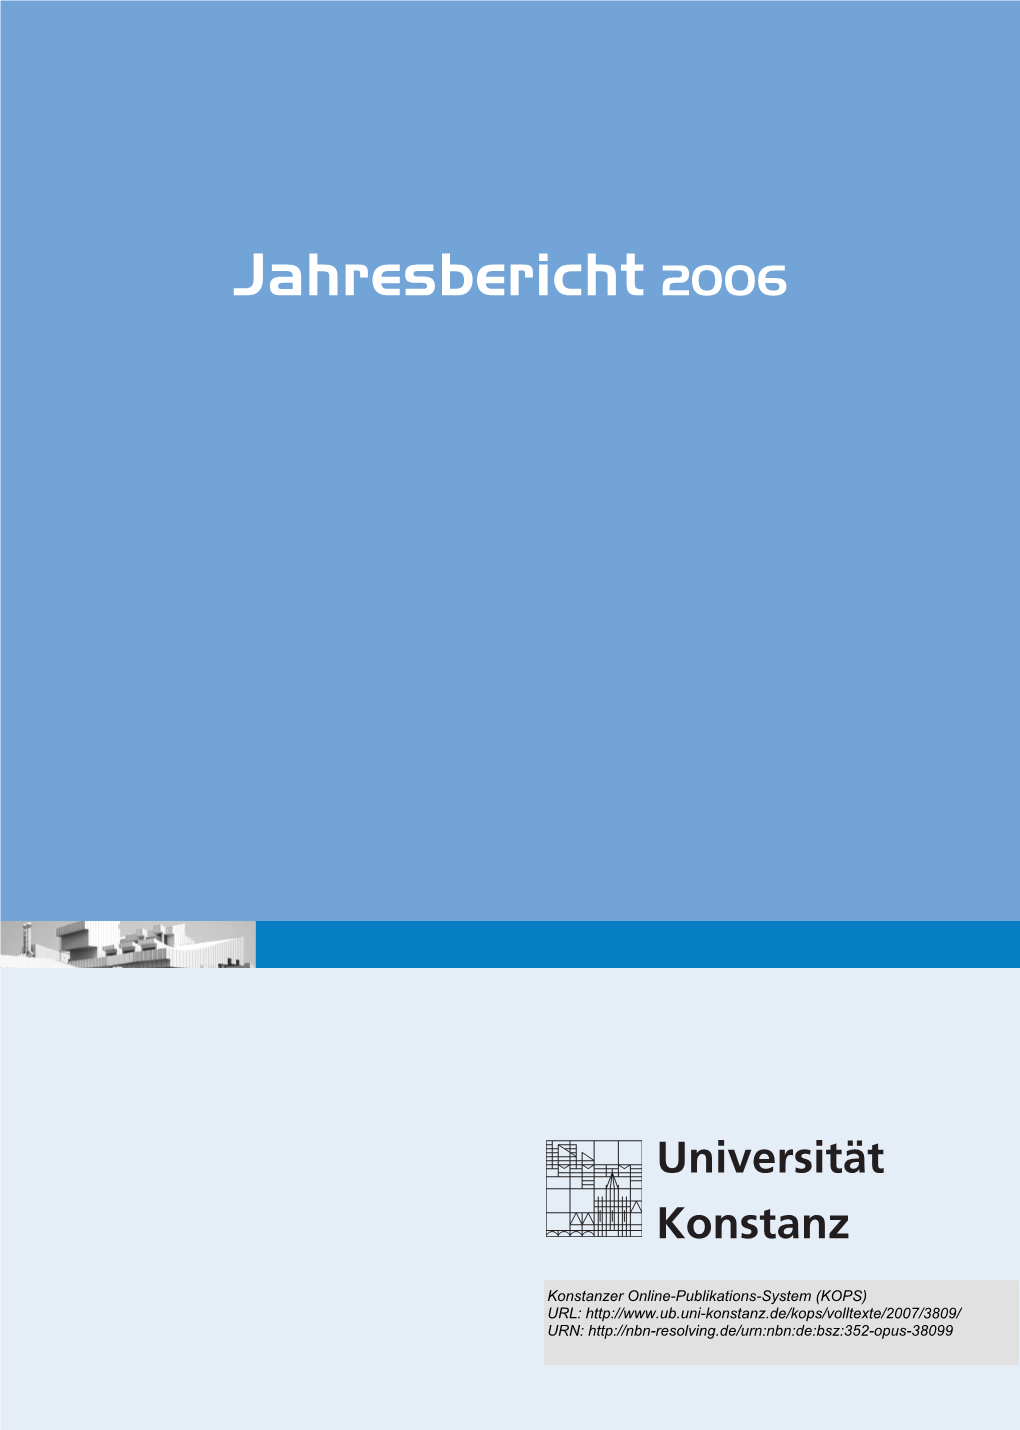 Jahresbericht 2006 Der Universität Konstanz